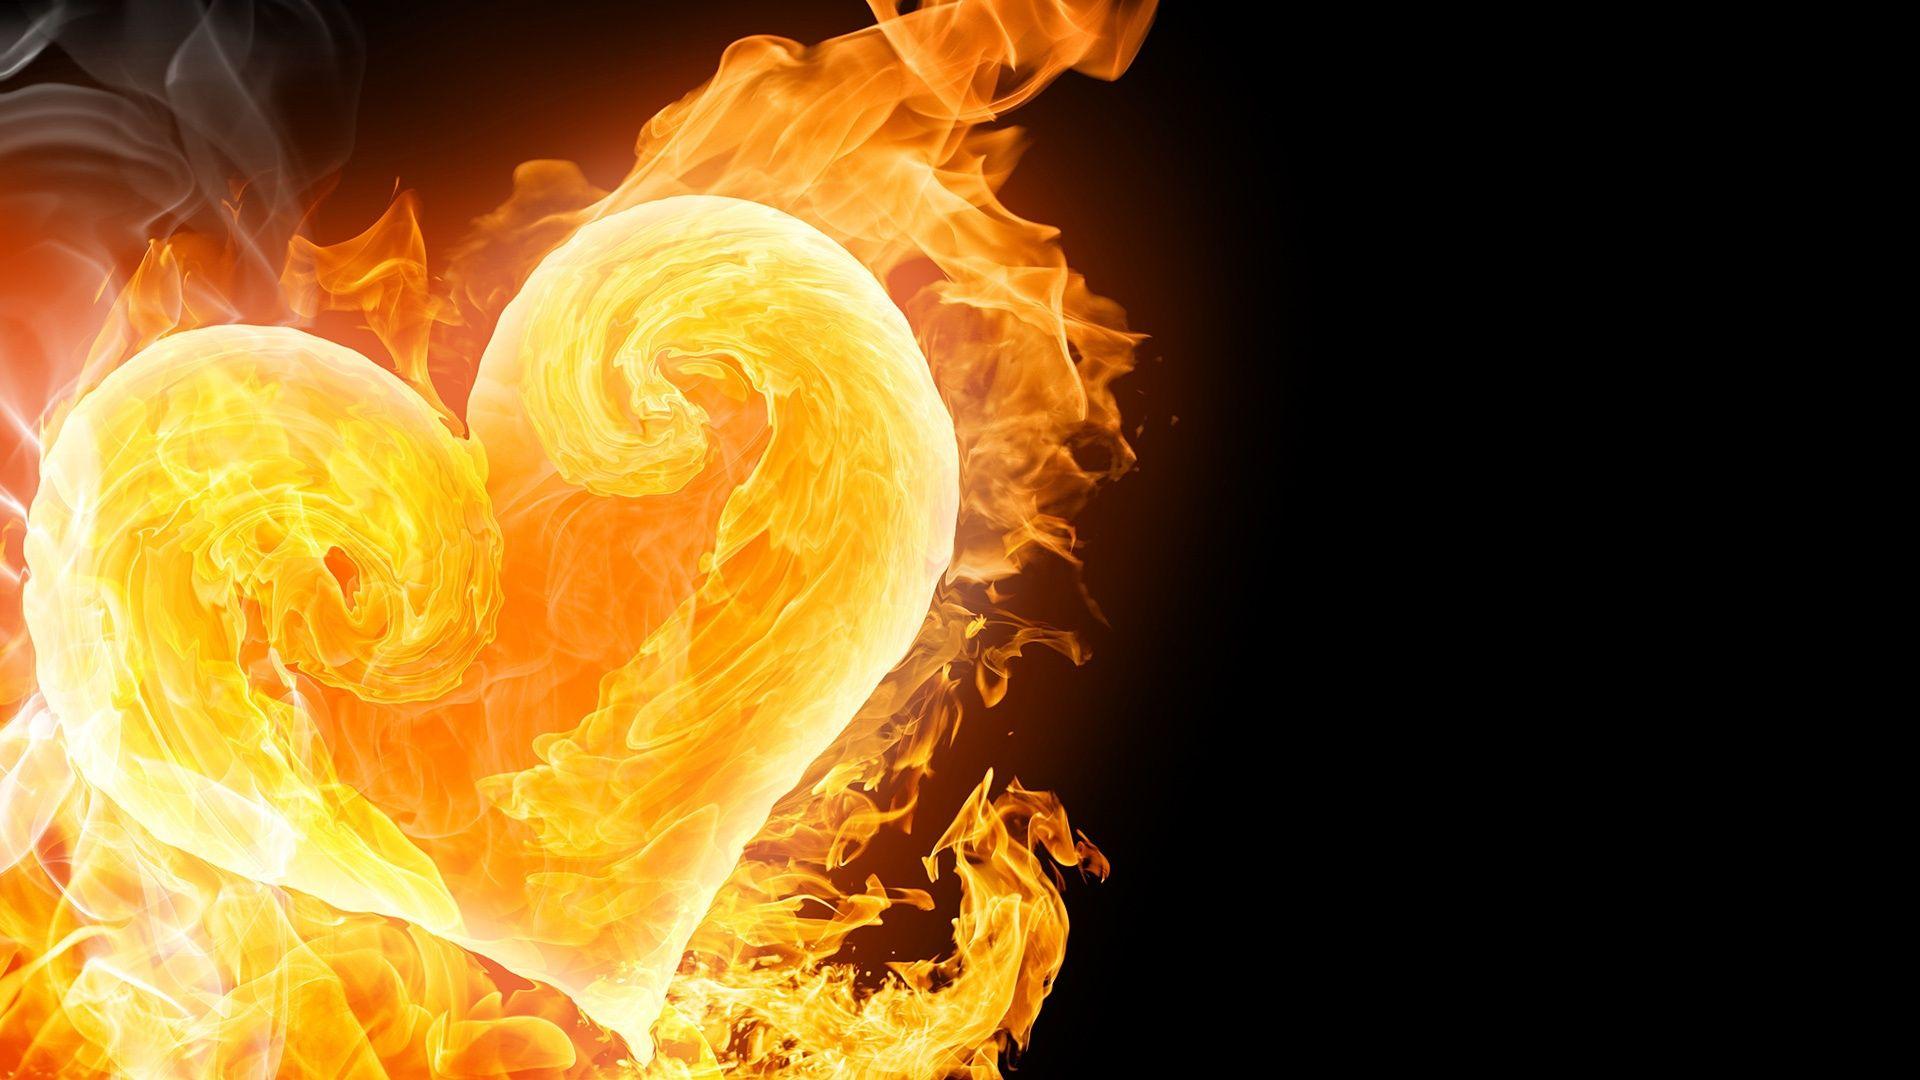 Fire heart. Wallpaper. Fire heart, Fire image, Heart